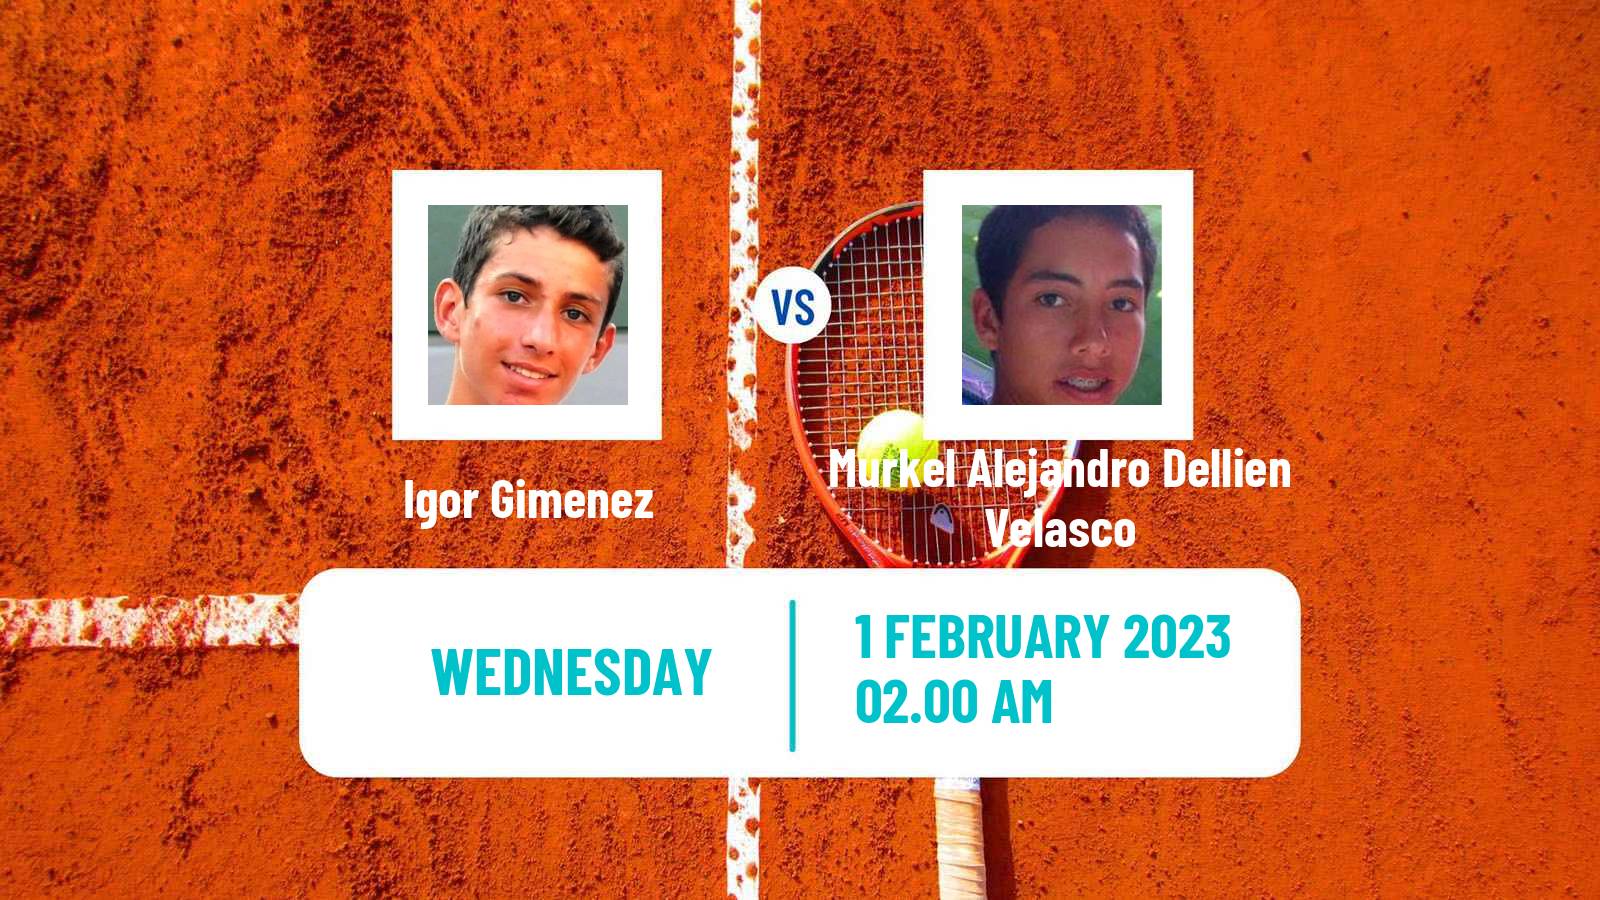 Tennis ITF Tournaments Igor Gimenez - Murkel Alejandro Dellien Velasco